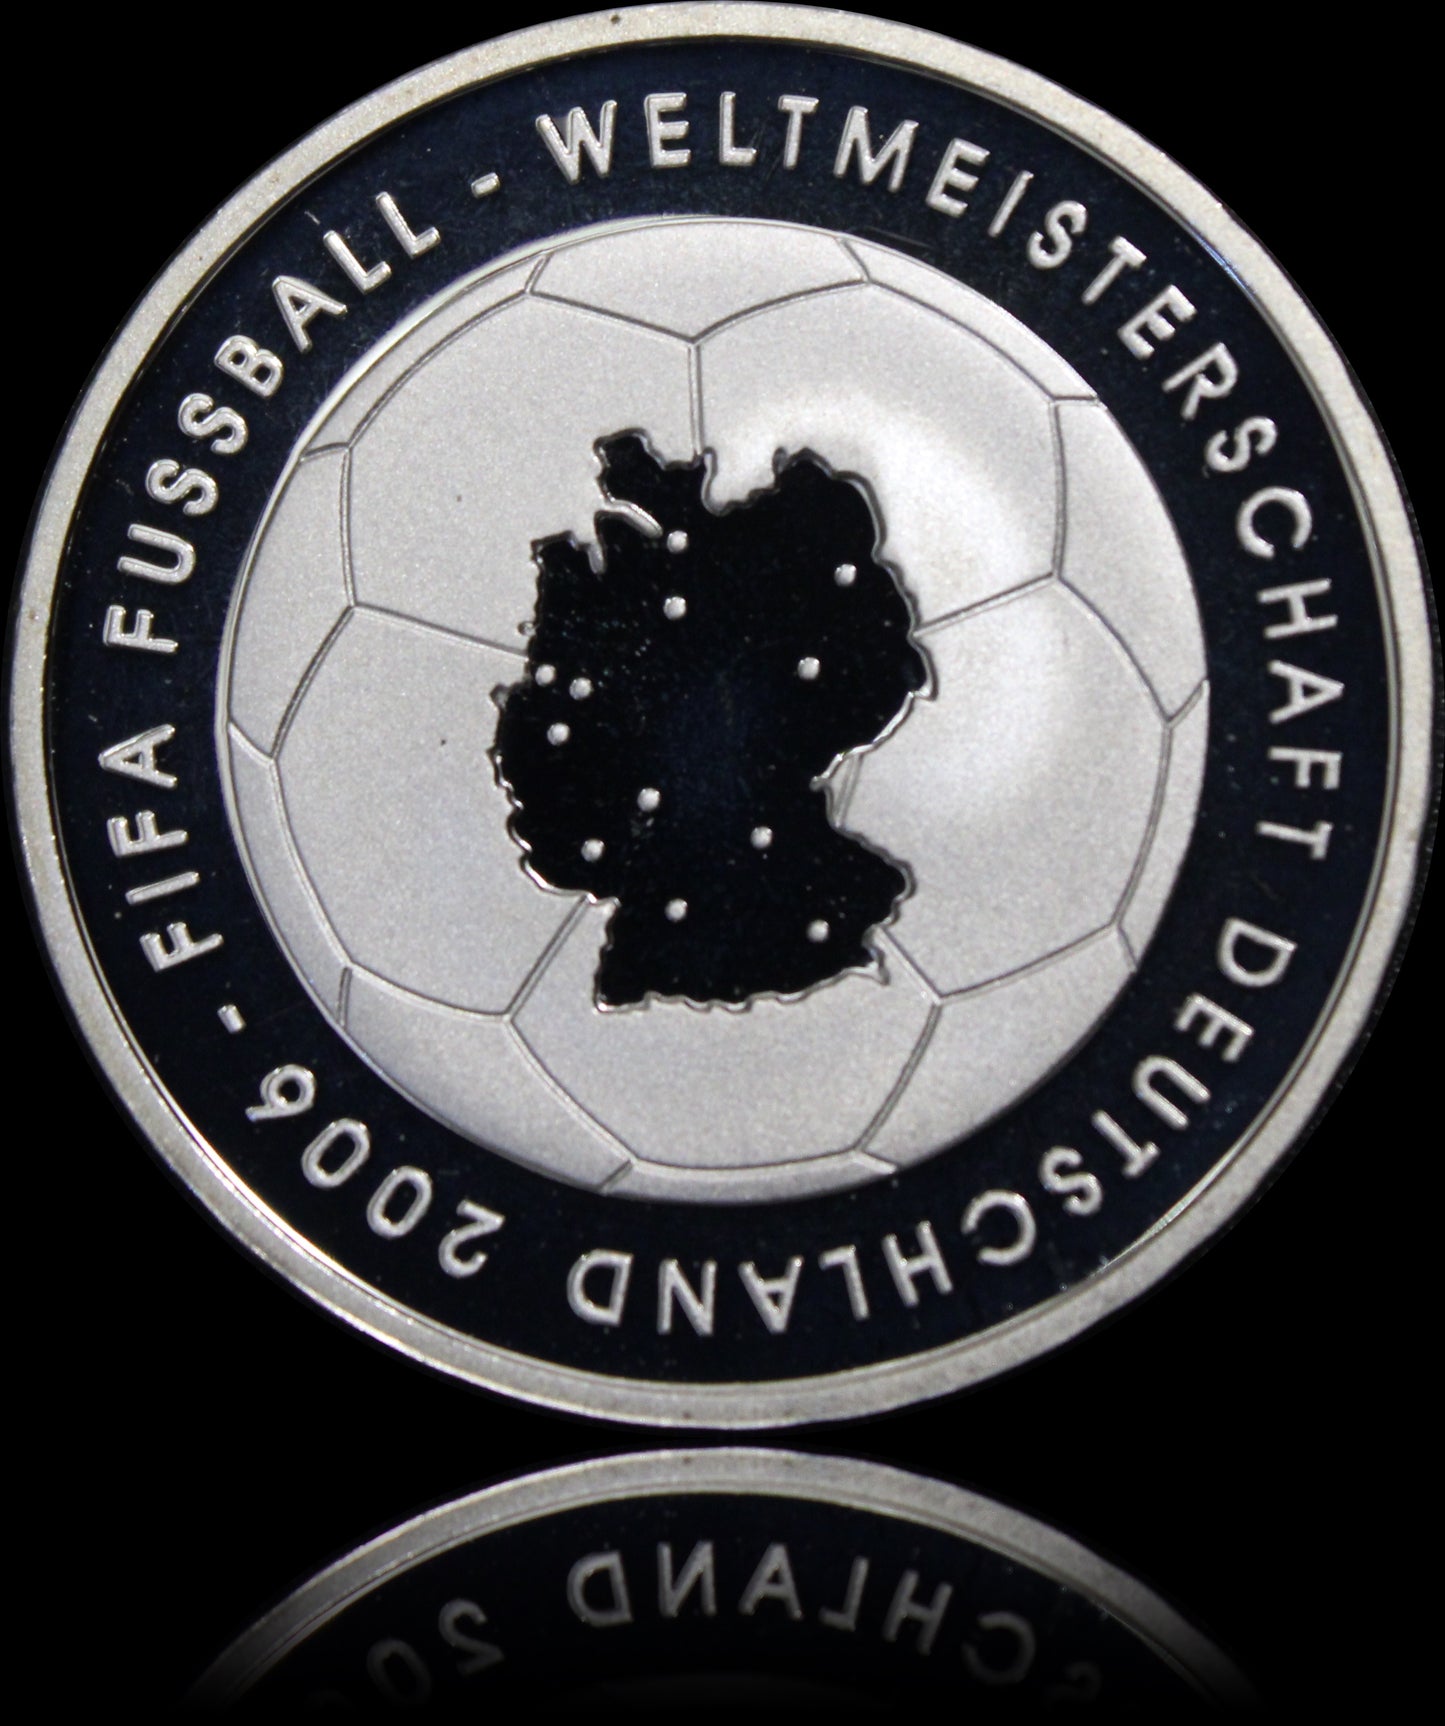 FIFA FUSSBALL WM 2006 - 1. AUSGABE, Serie 10 € Silber Gedenkmünzen Deutschland, Spiegelglanz, 2003